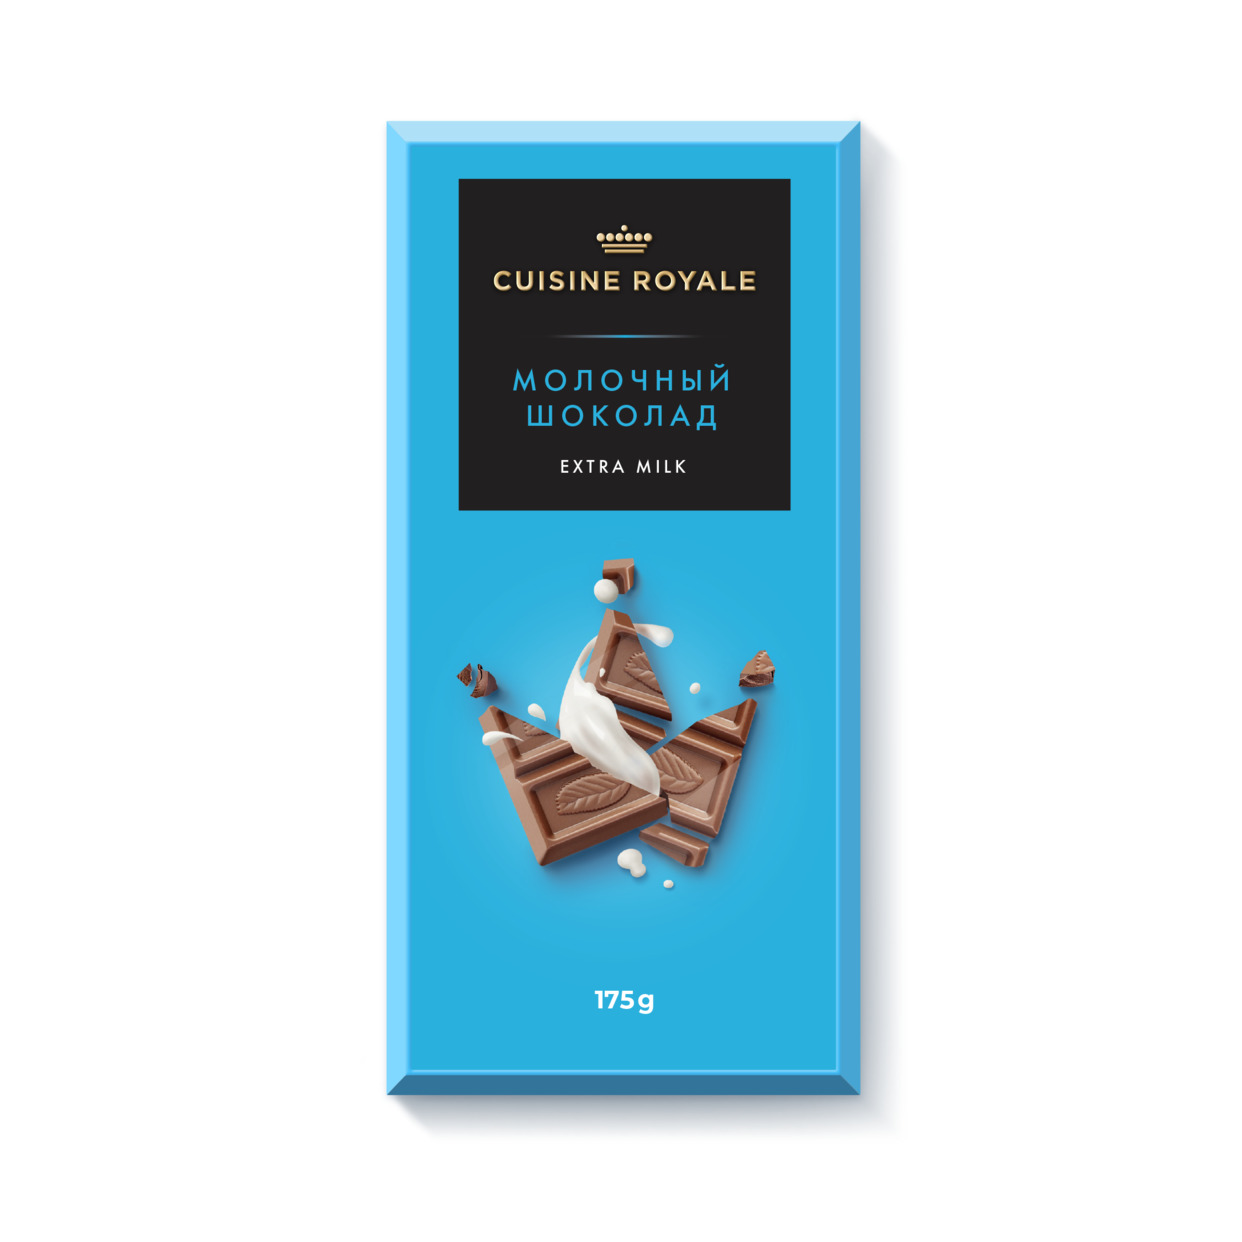 CUISINE ROYALE Изделие кондитерское шоколад молочный extra milk 175г по акции в Пятерочке